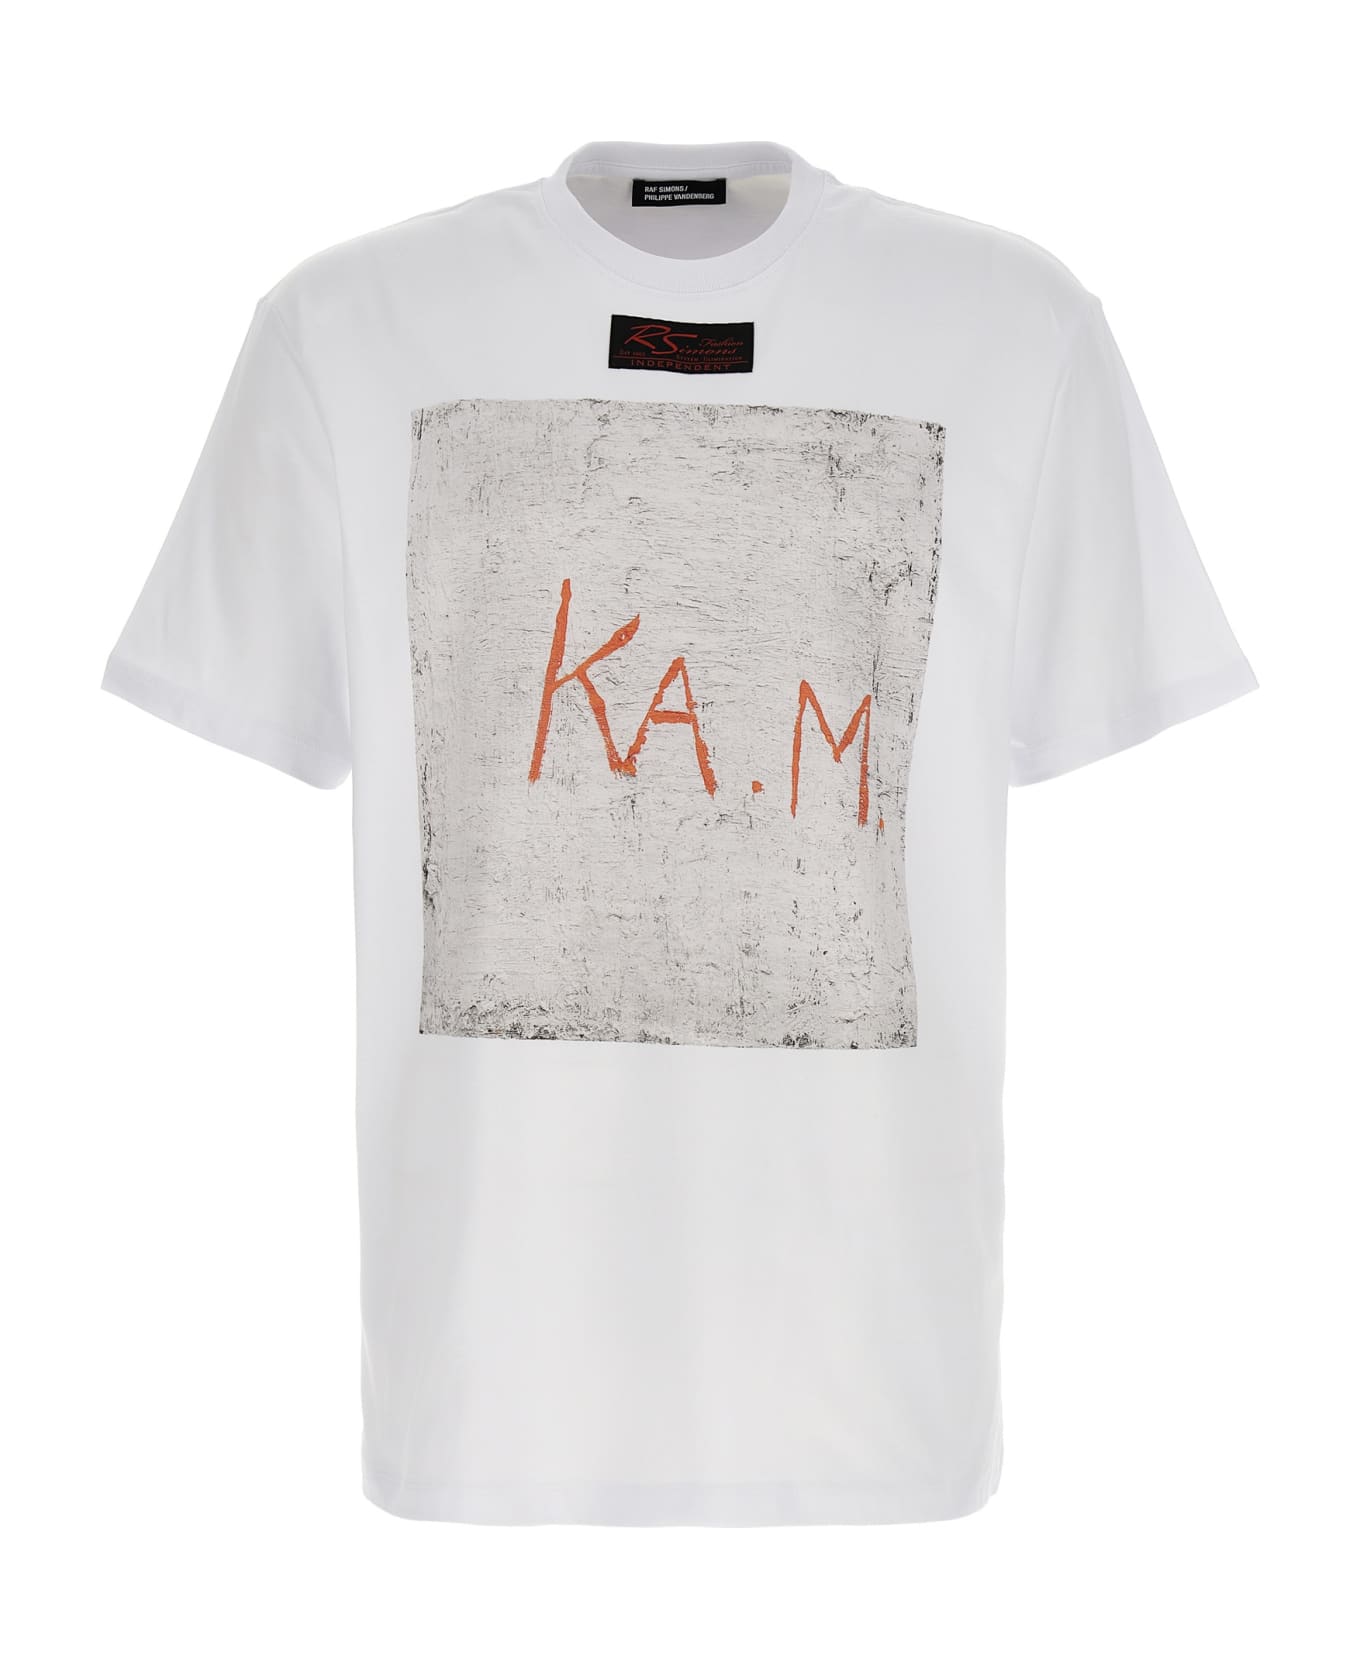 Raf Simons 'ka.m' T-shirt - White